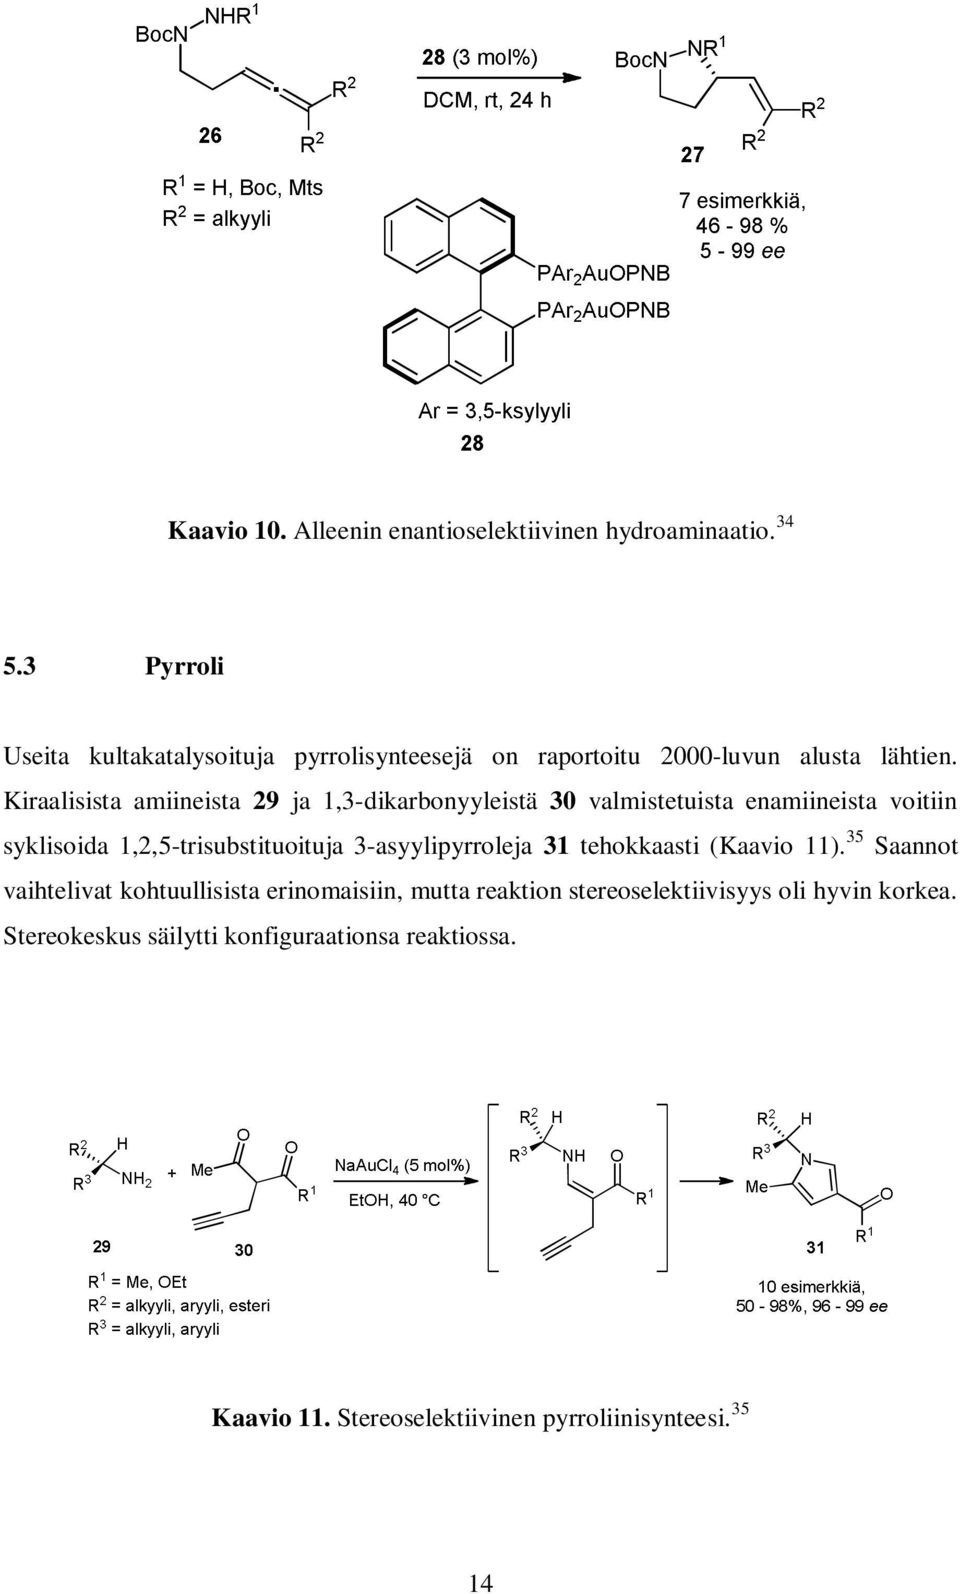 Kiraalisista amiineista 29 ja 1,3-dikarbonyyleistä 30 valmistetuista enamiineista voitiin syklisoida 1,2,5-trisubstituoituja